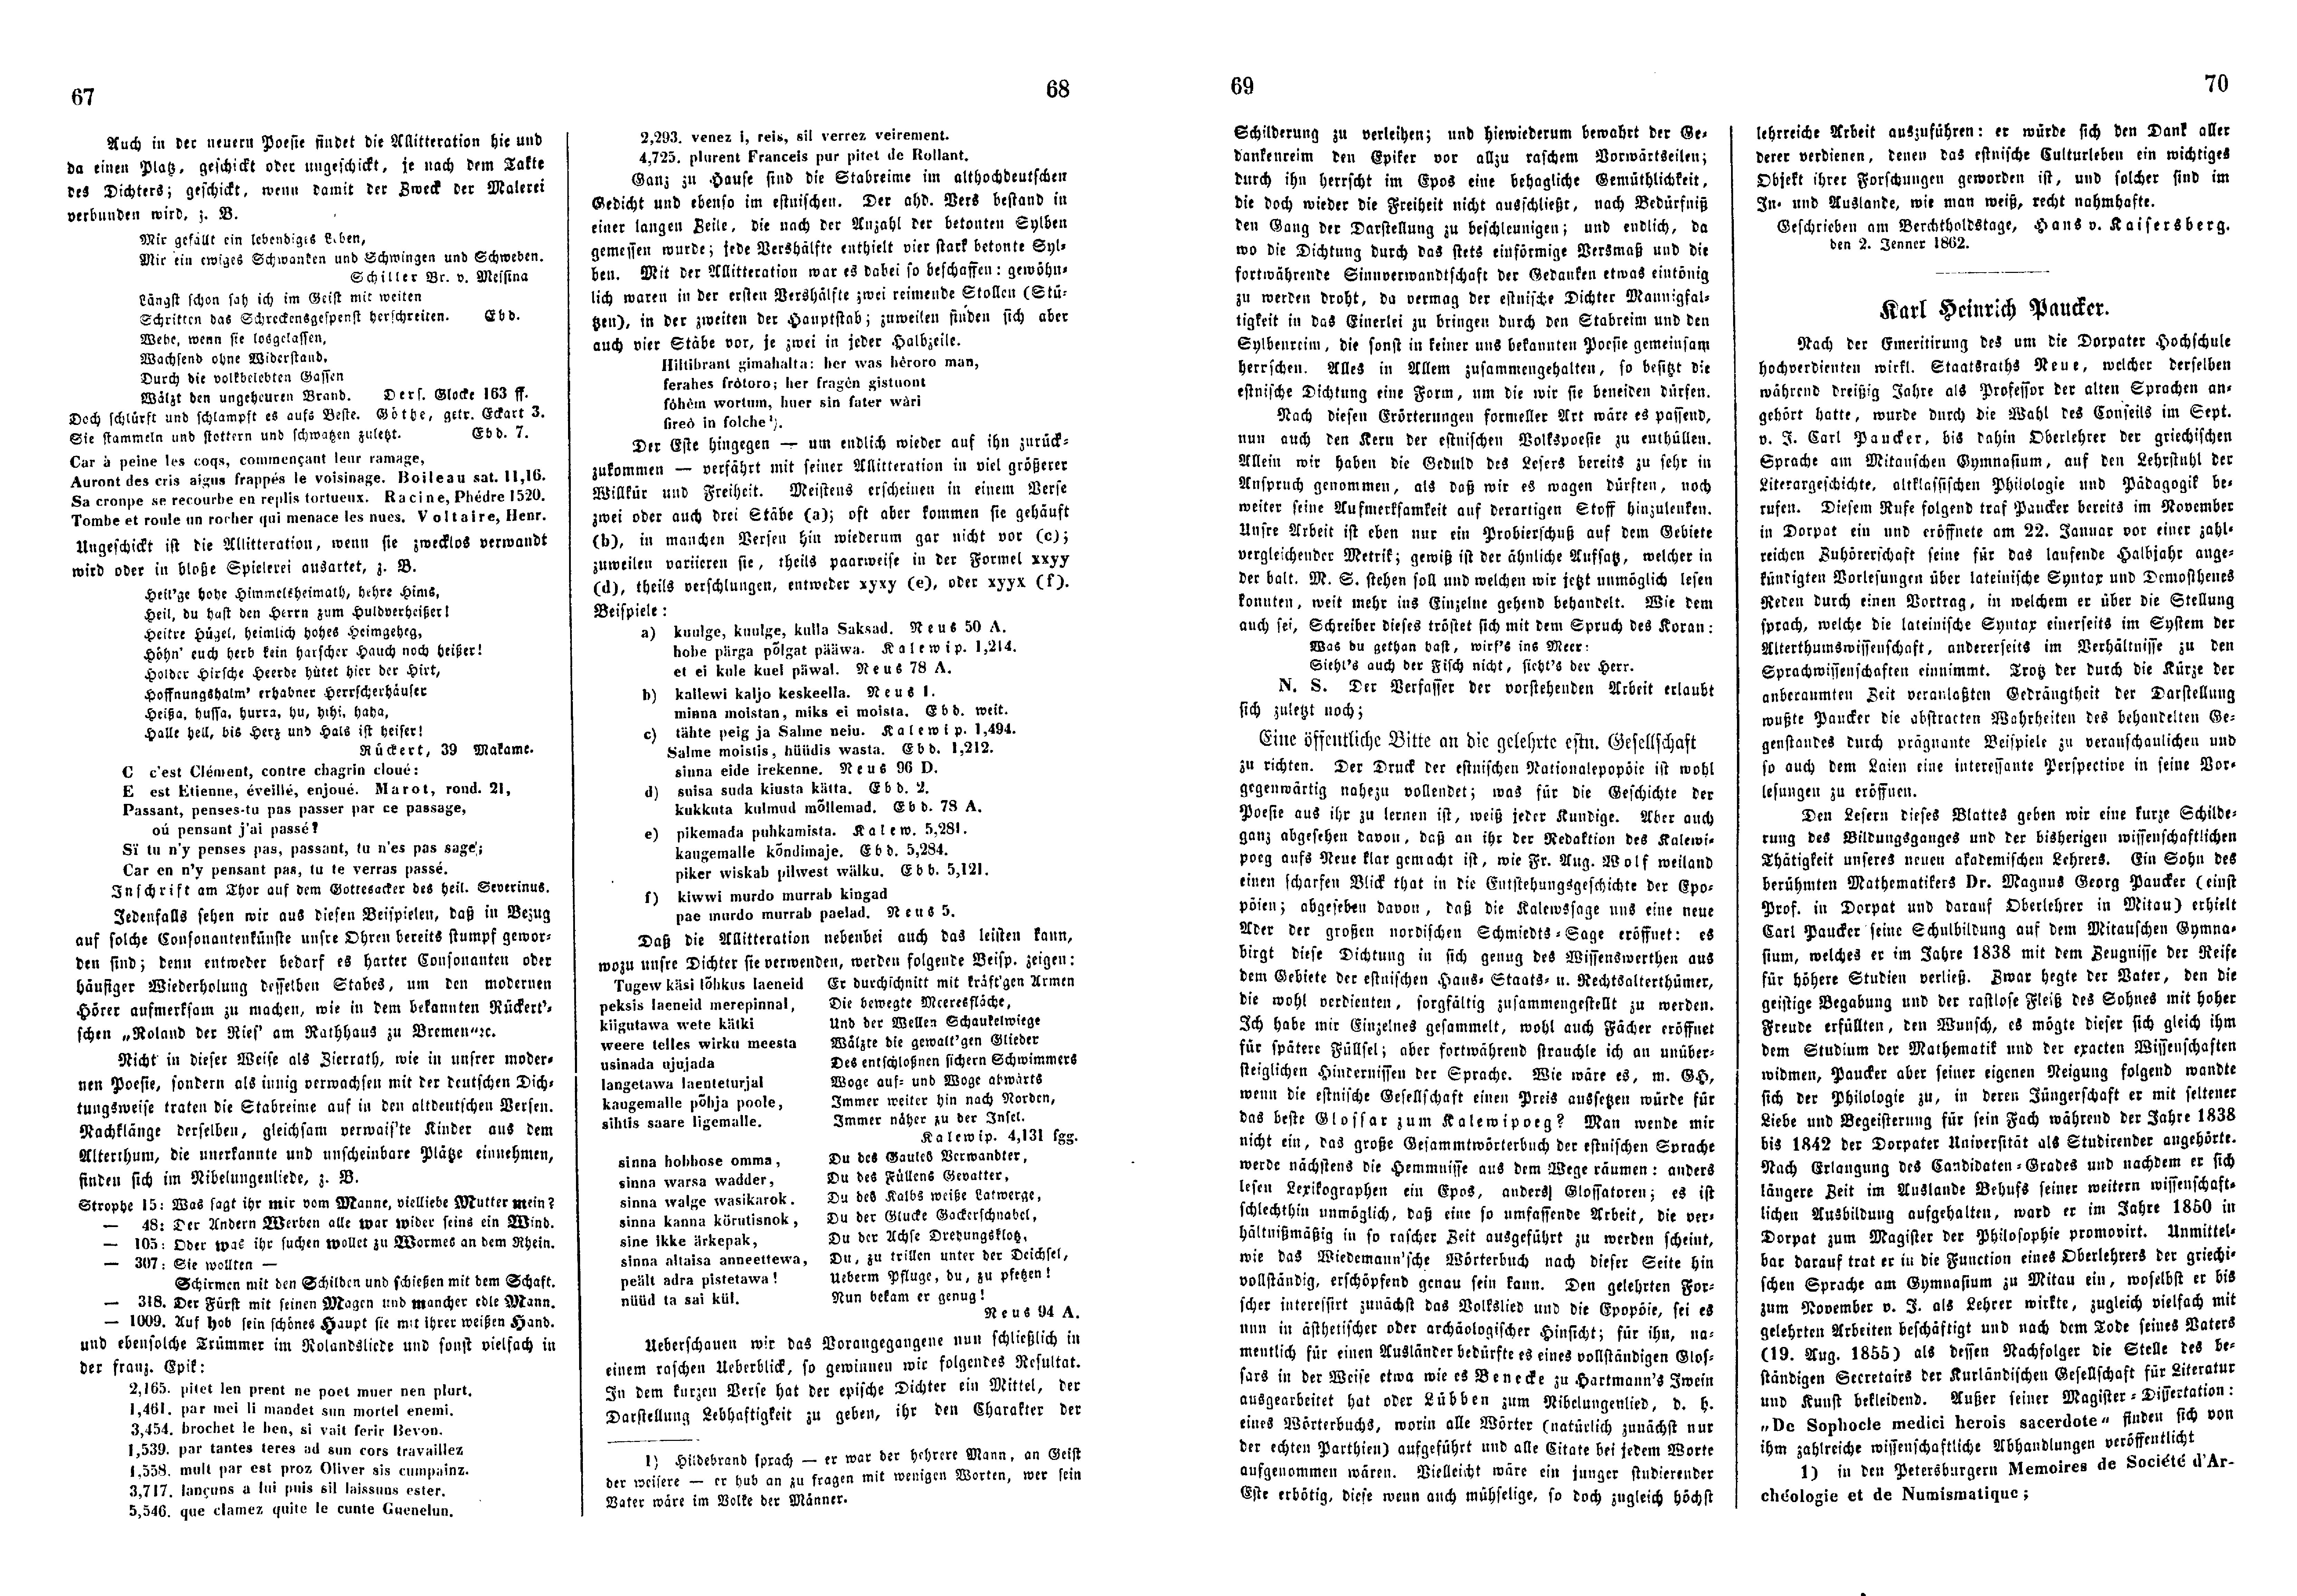 Das Inland [27] (1862) | 21. (67-70) Haupttext